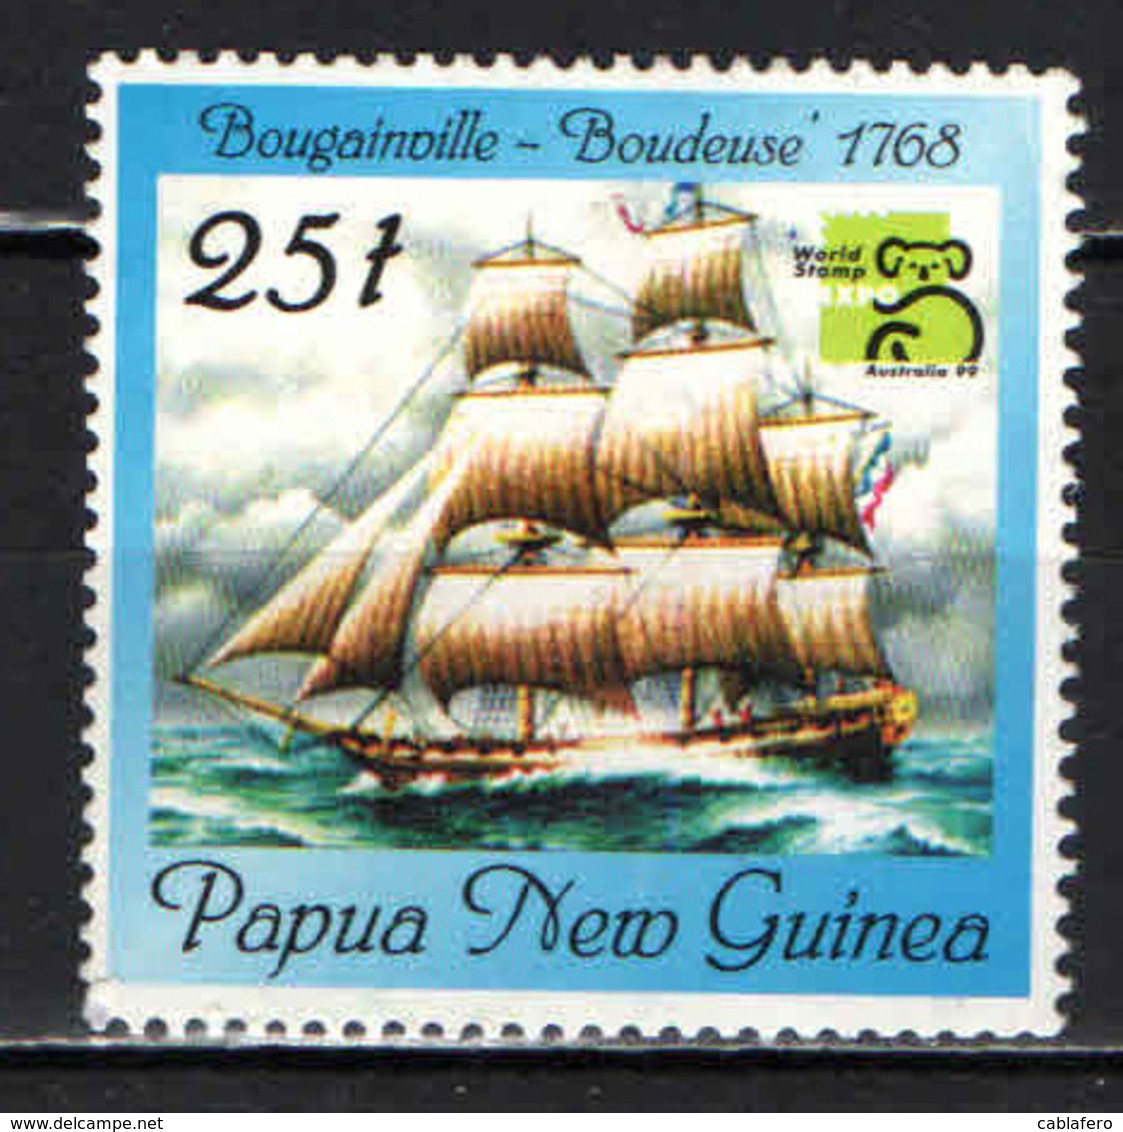 PAPUA NUOVA GUINEA - 1999 - Boudeuse,” 1768 - Ship - USATO - Papua Nuova Guinea